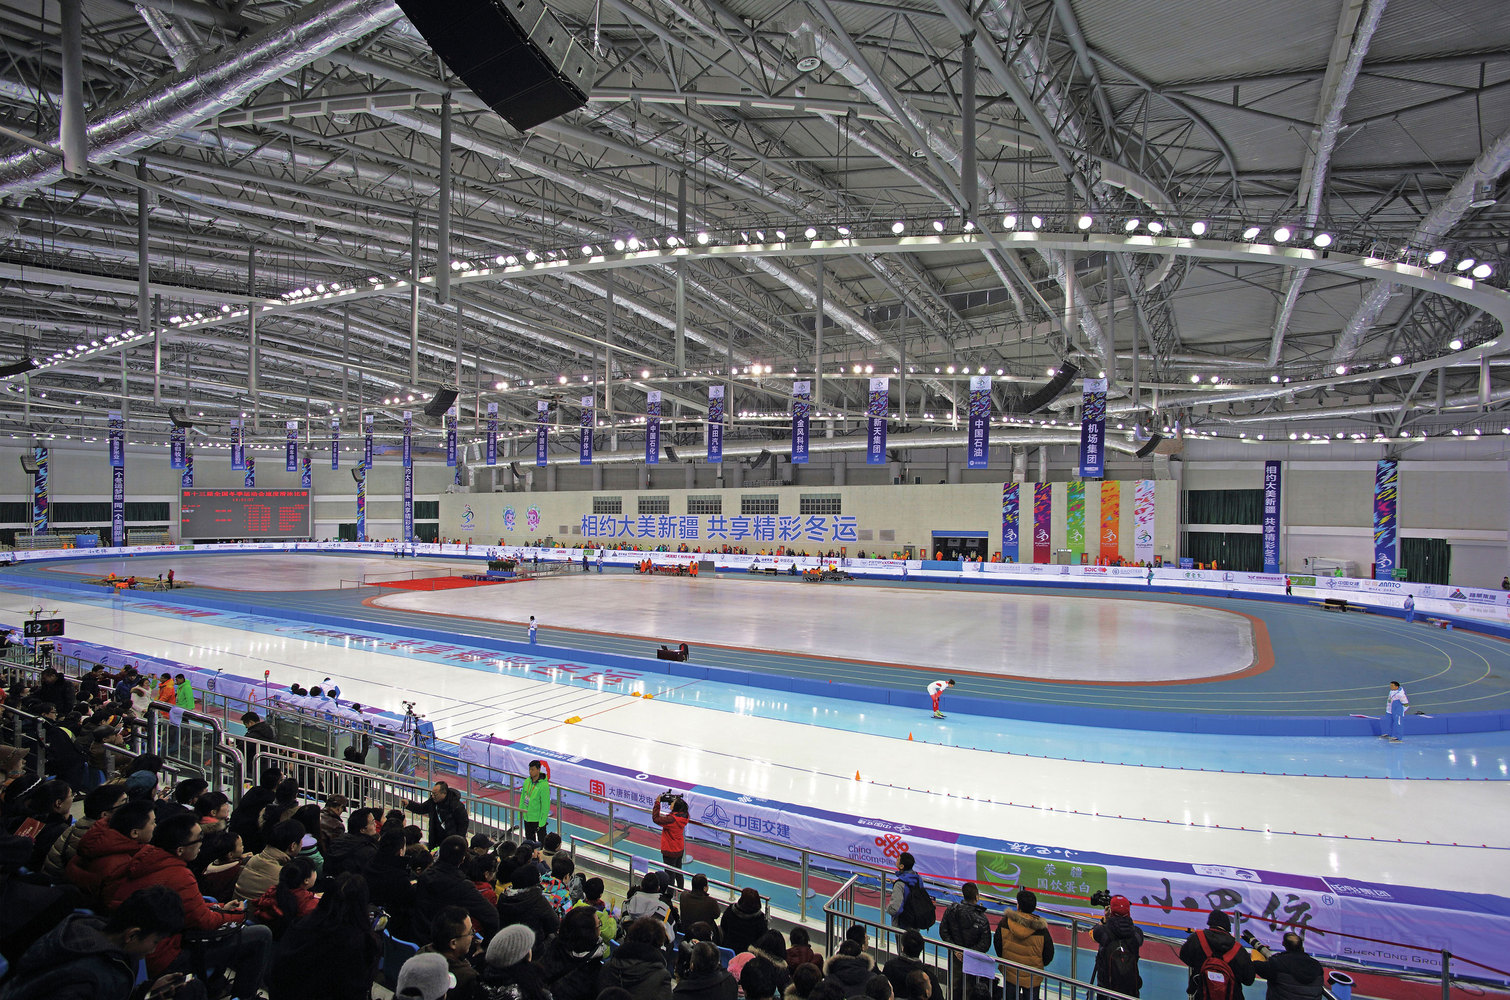 乌鲁木齐第十三届全国冬季运动会冰上运动中心